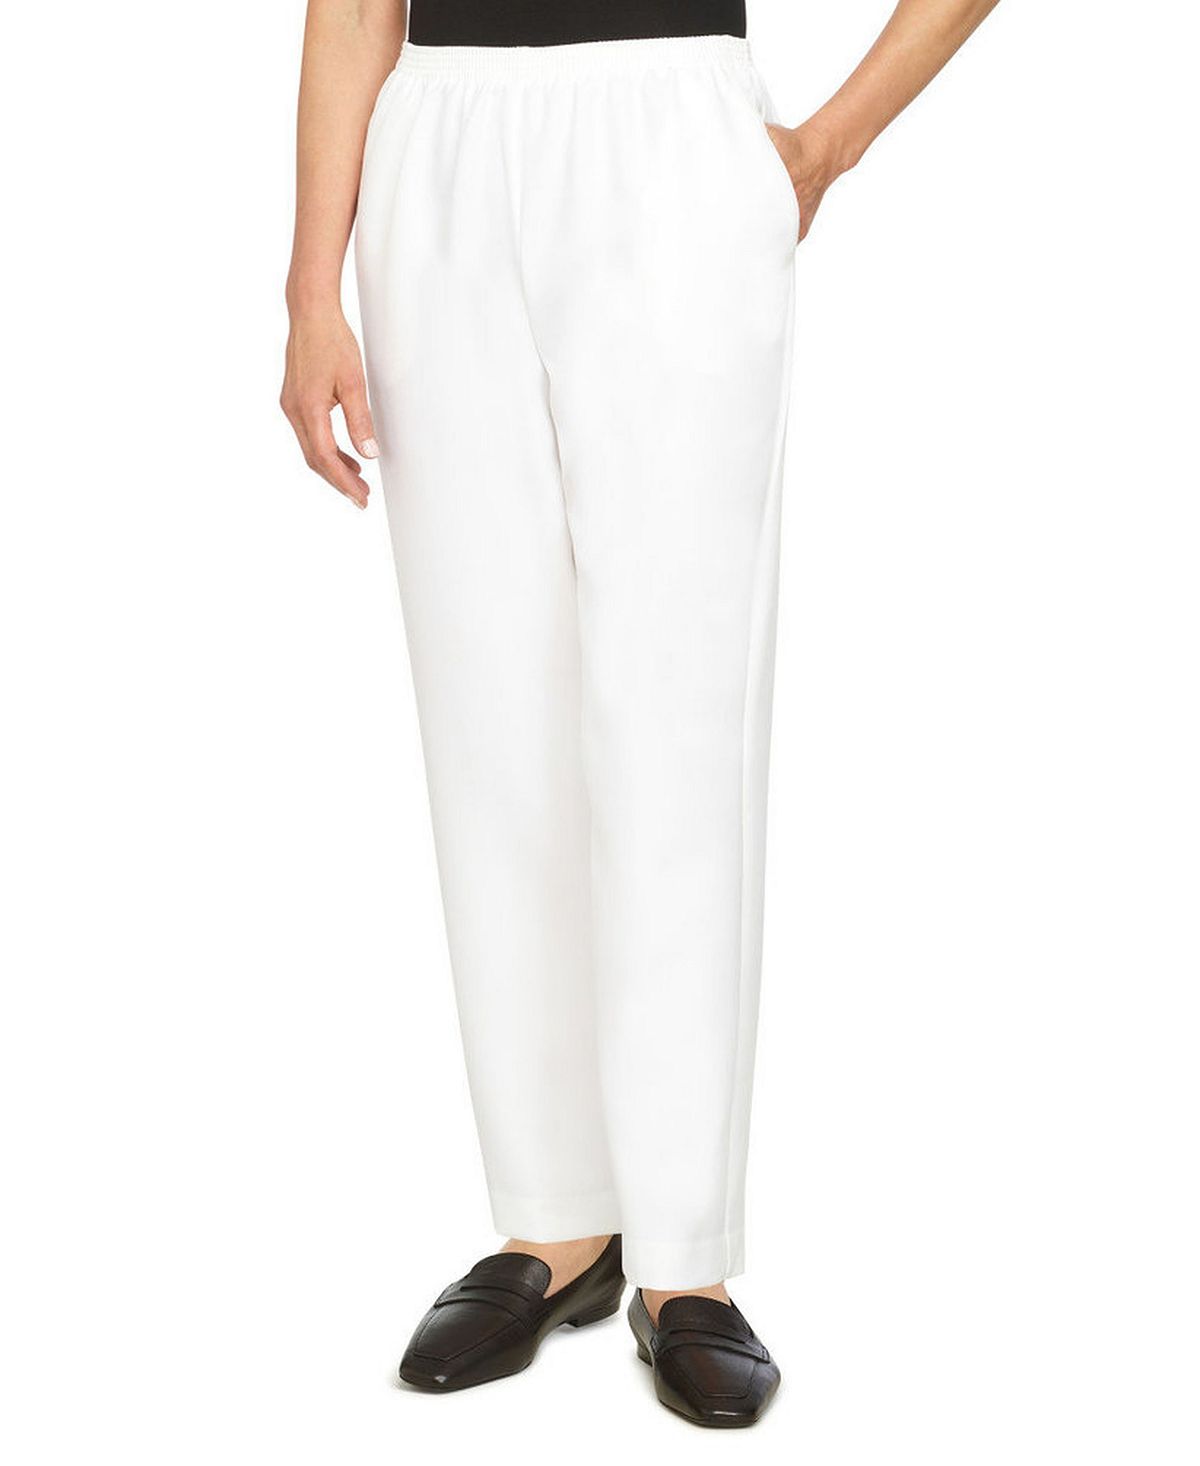 Плюс размер классические прямые брюки средней длины без застежек Alfred Dunner, белый классические джинсовые брюки без застежки больших размеров прямые брюки средней длины alfred dunner